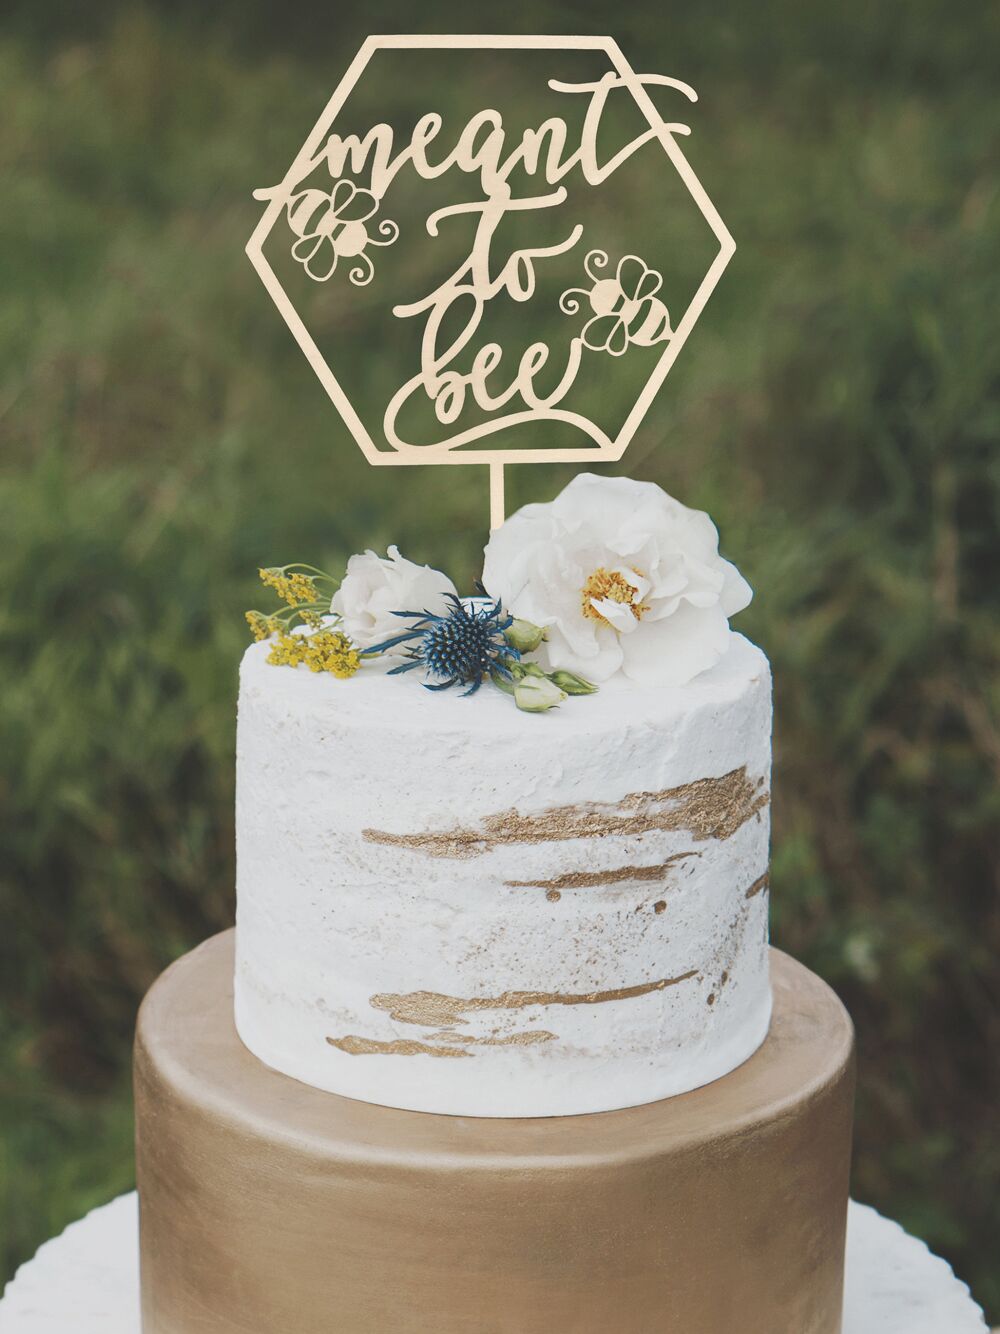 Significado de abeja para la tarta de boda